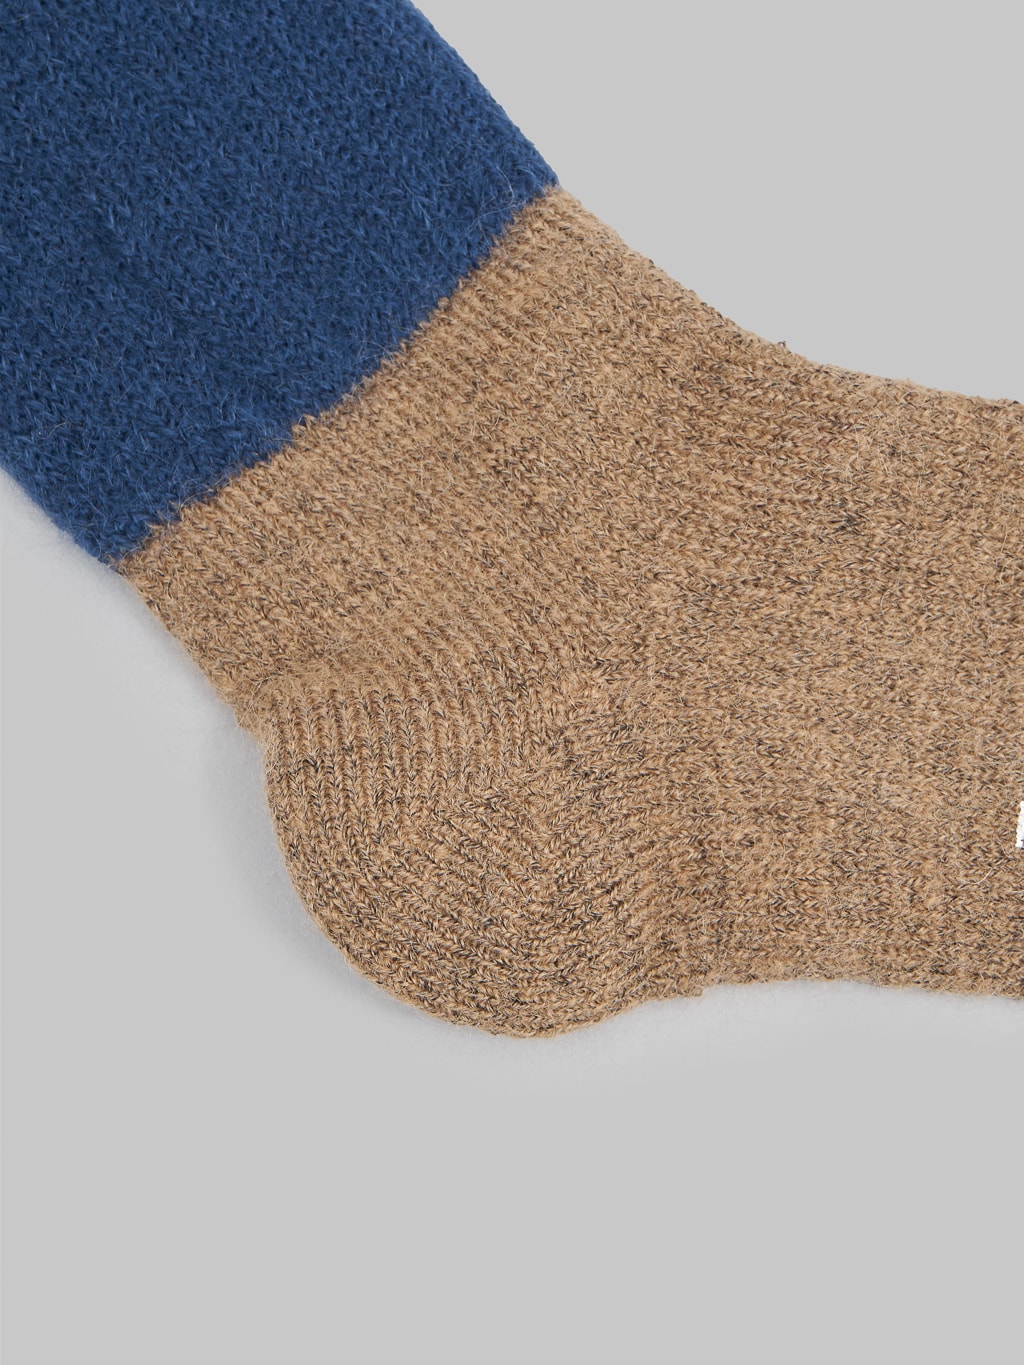 Nishiguchi Kutsushita Mohair Wool Pile Socks Navy Texture